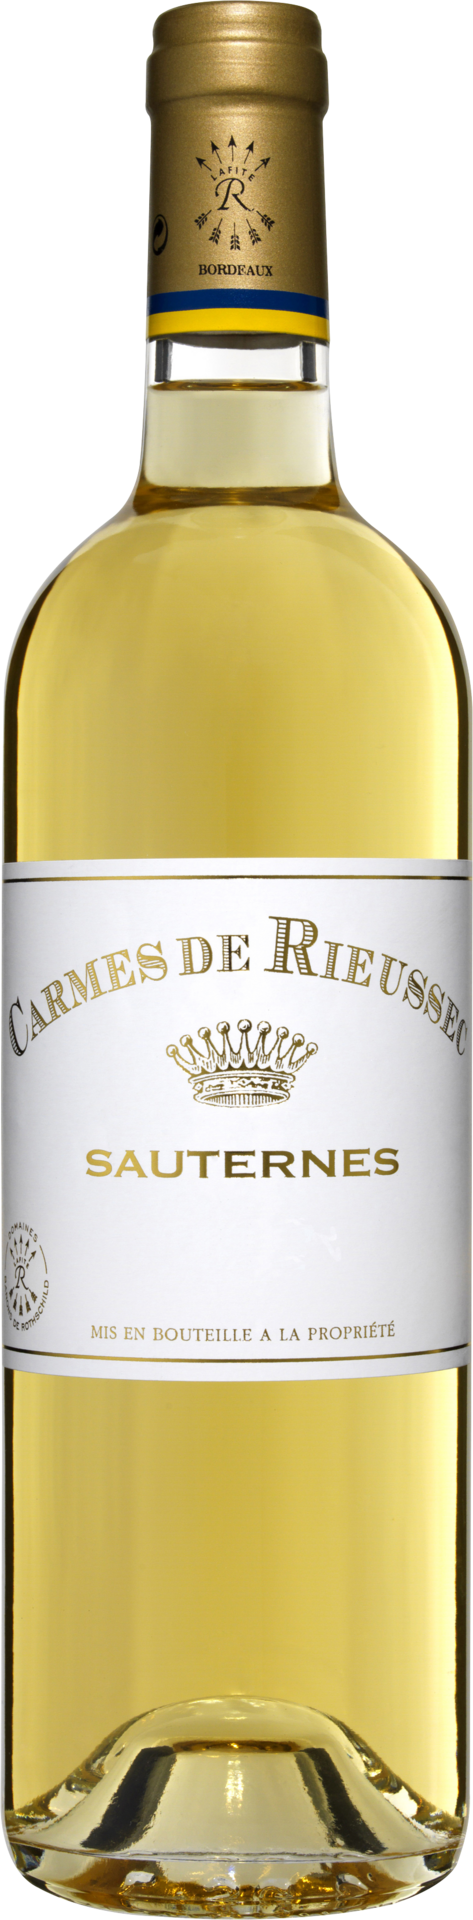 Carmes de Rieussec Sauternes AC,  Château Rieussec